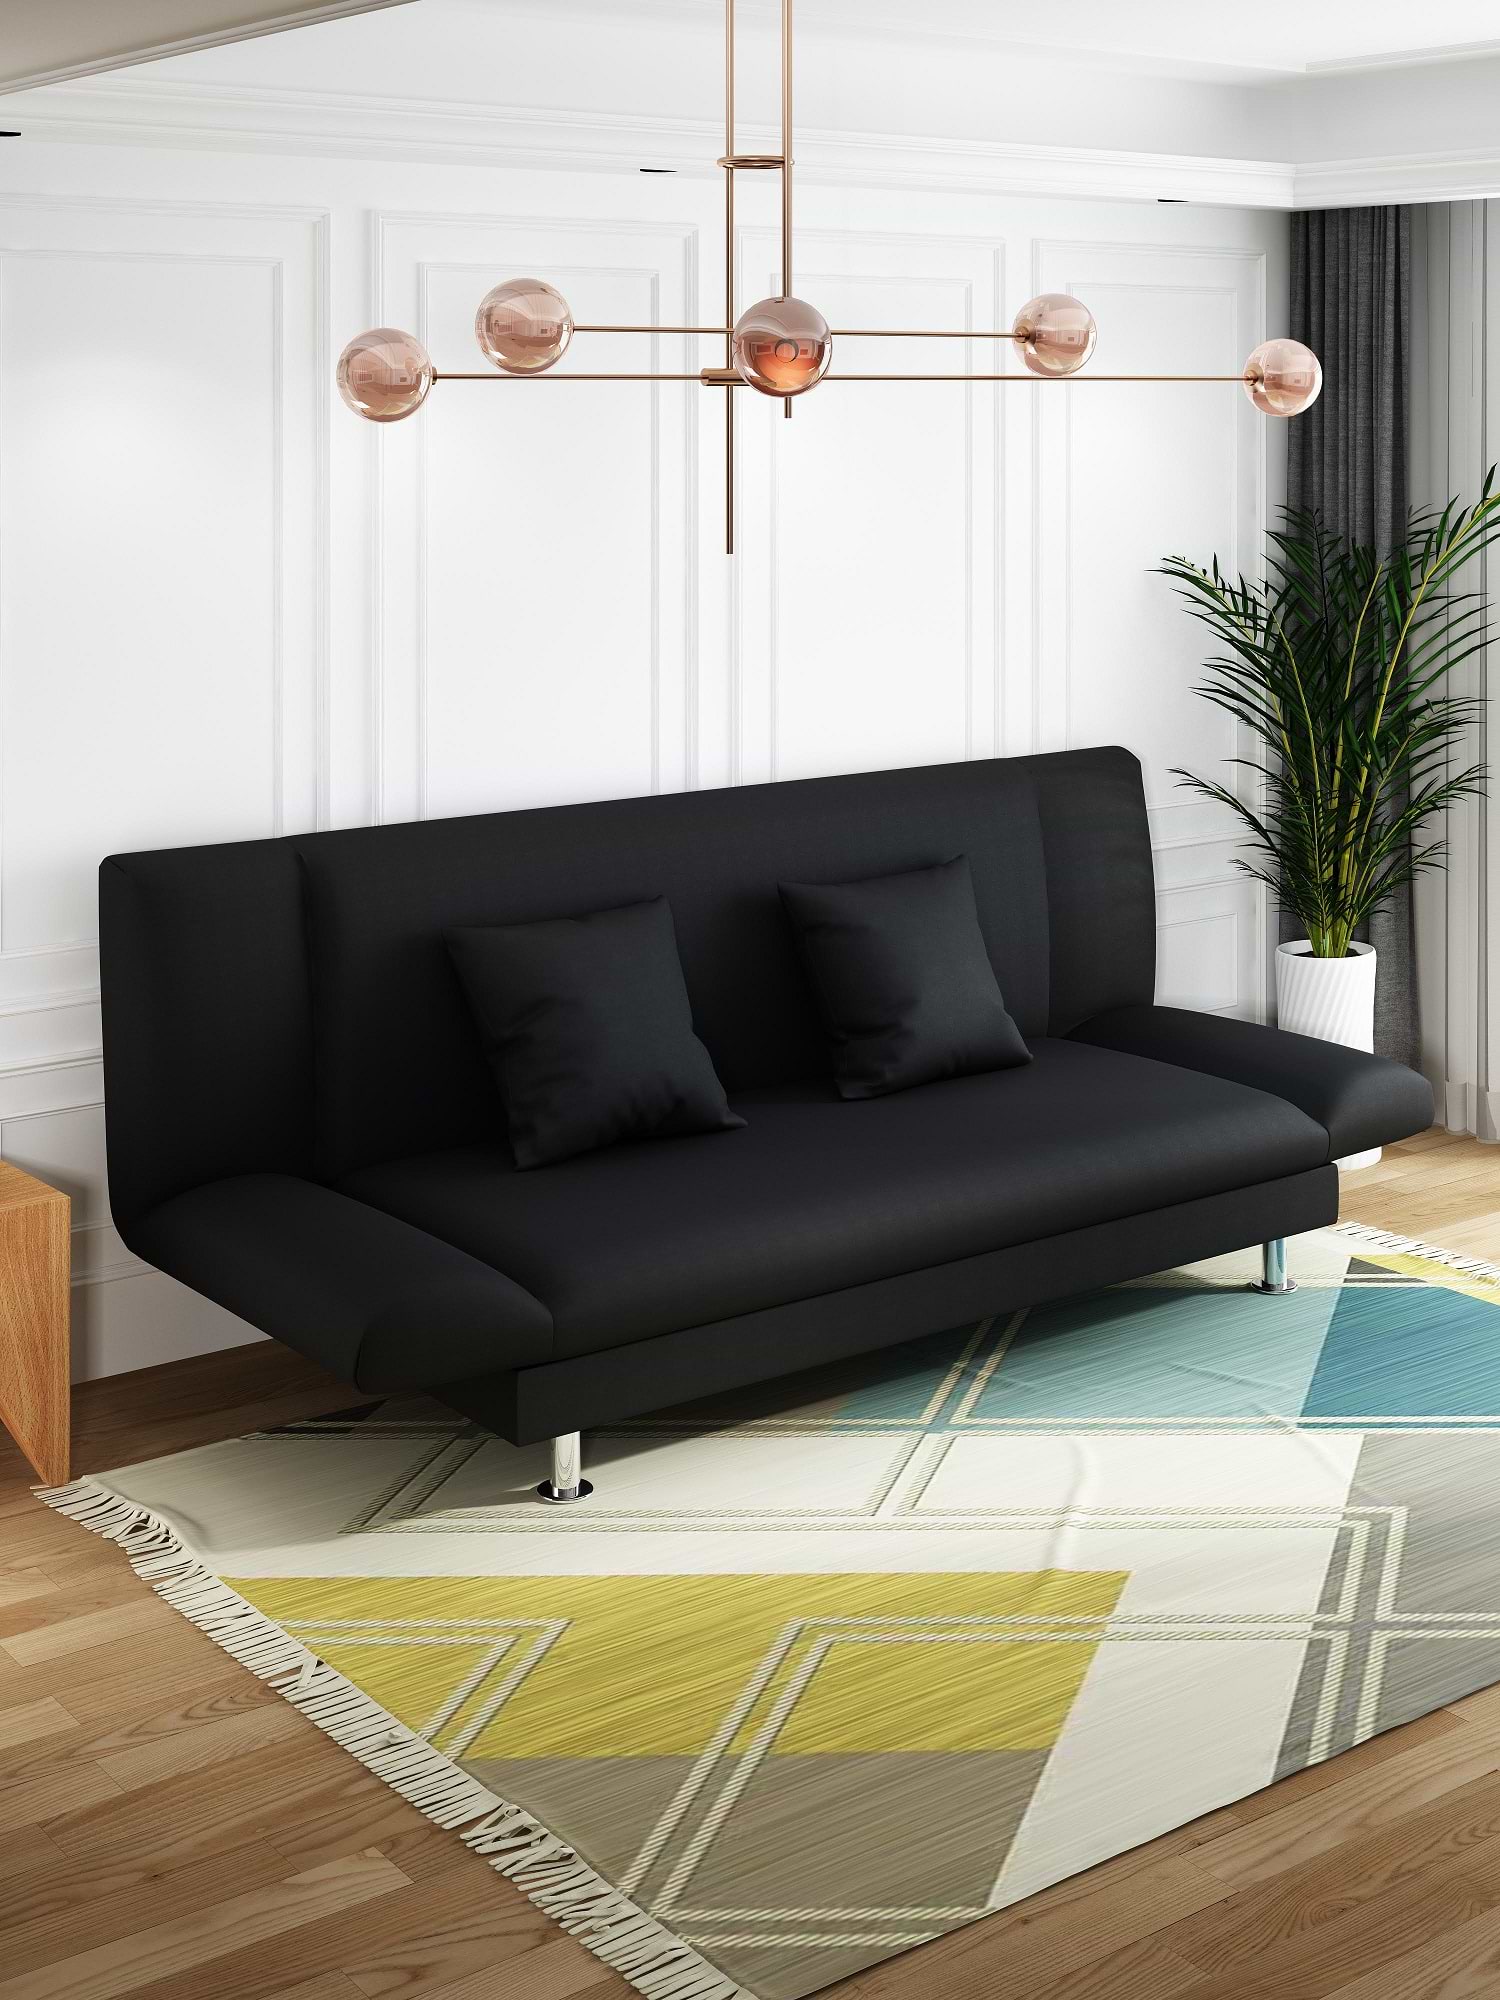 ספה תלת מושבית נמוכה נפתחת למיטה מידה 0.95X1.8 מטר דגם MSR-1093 צבע שחור ROSSO ITALY